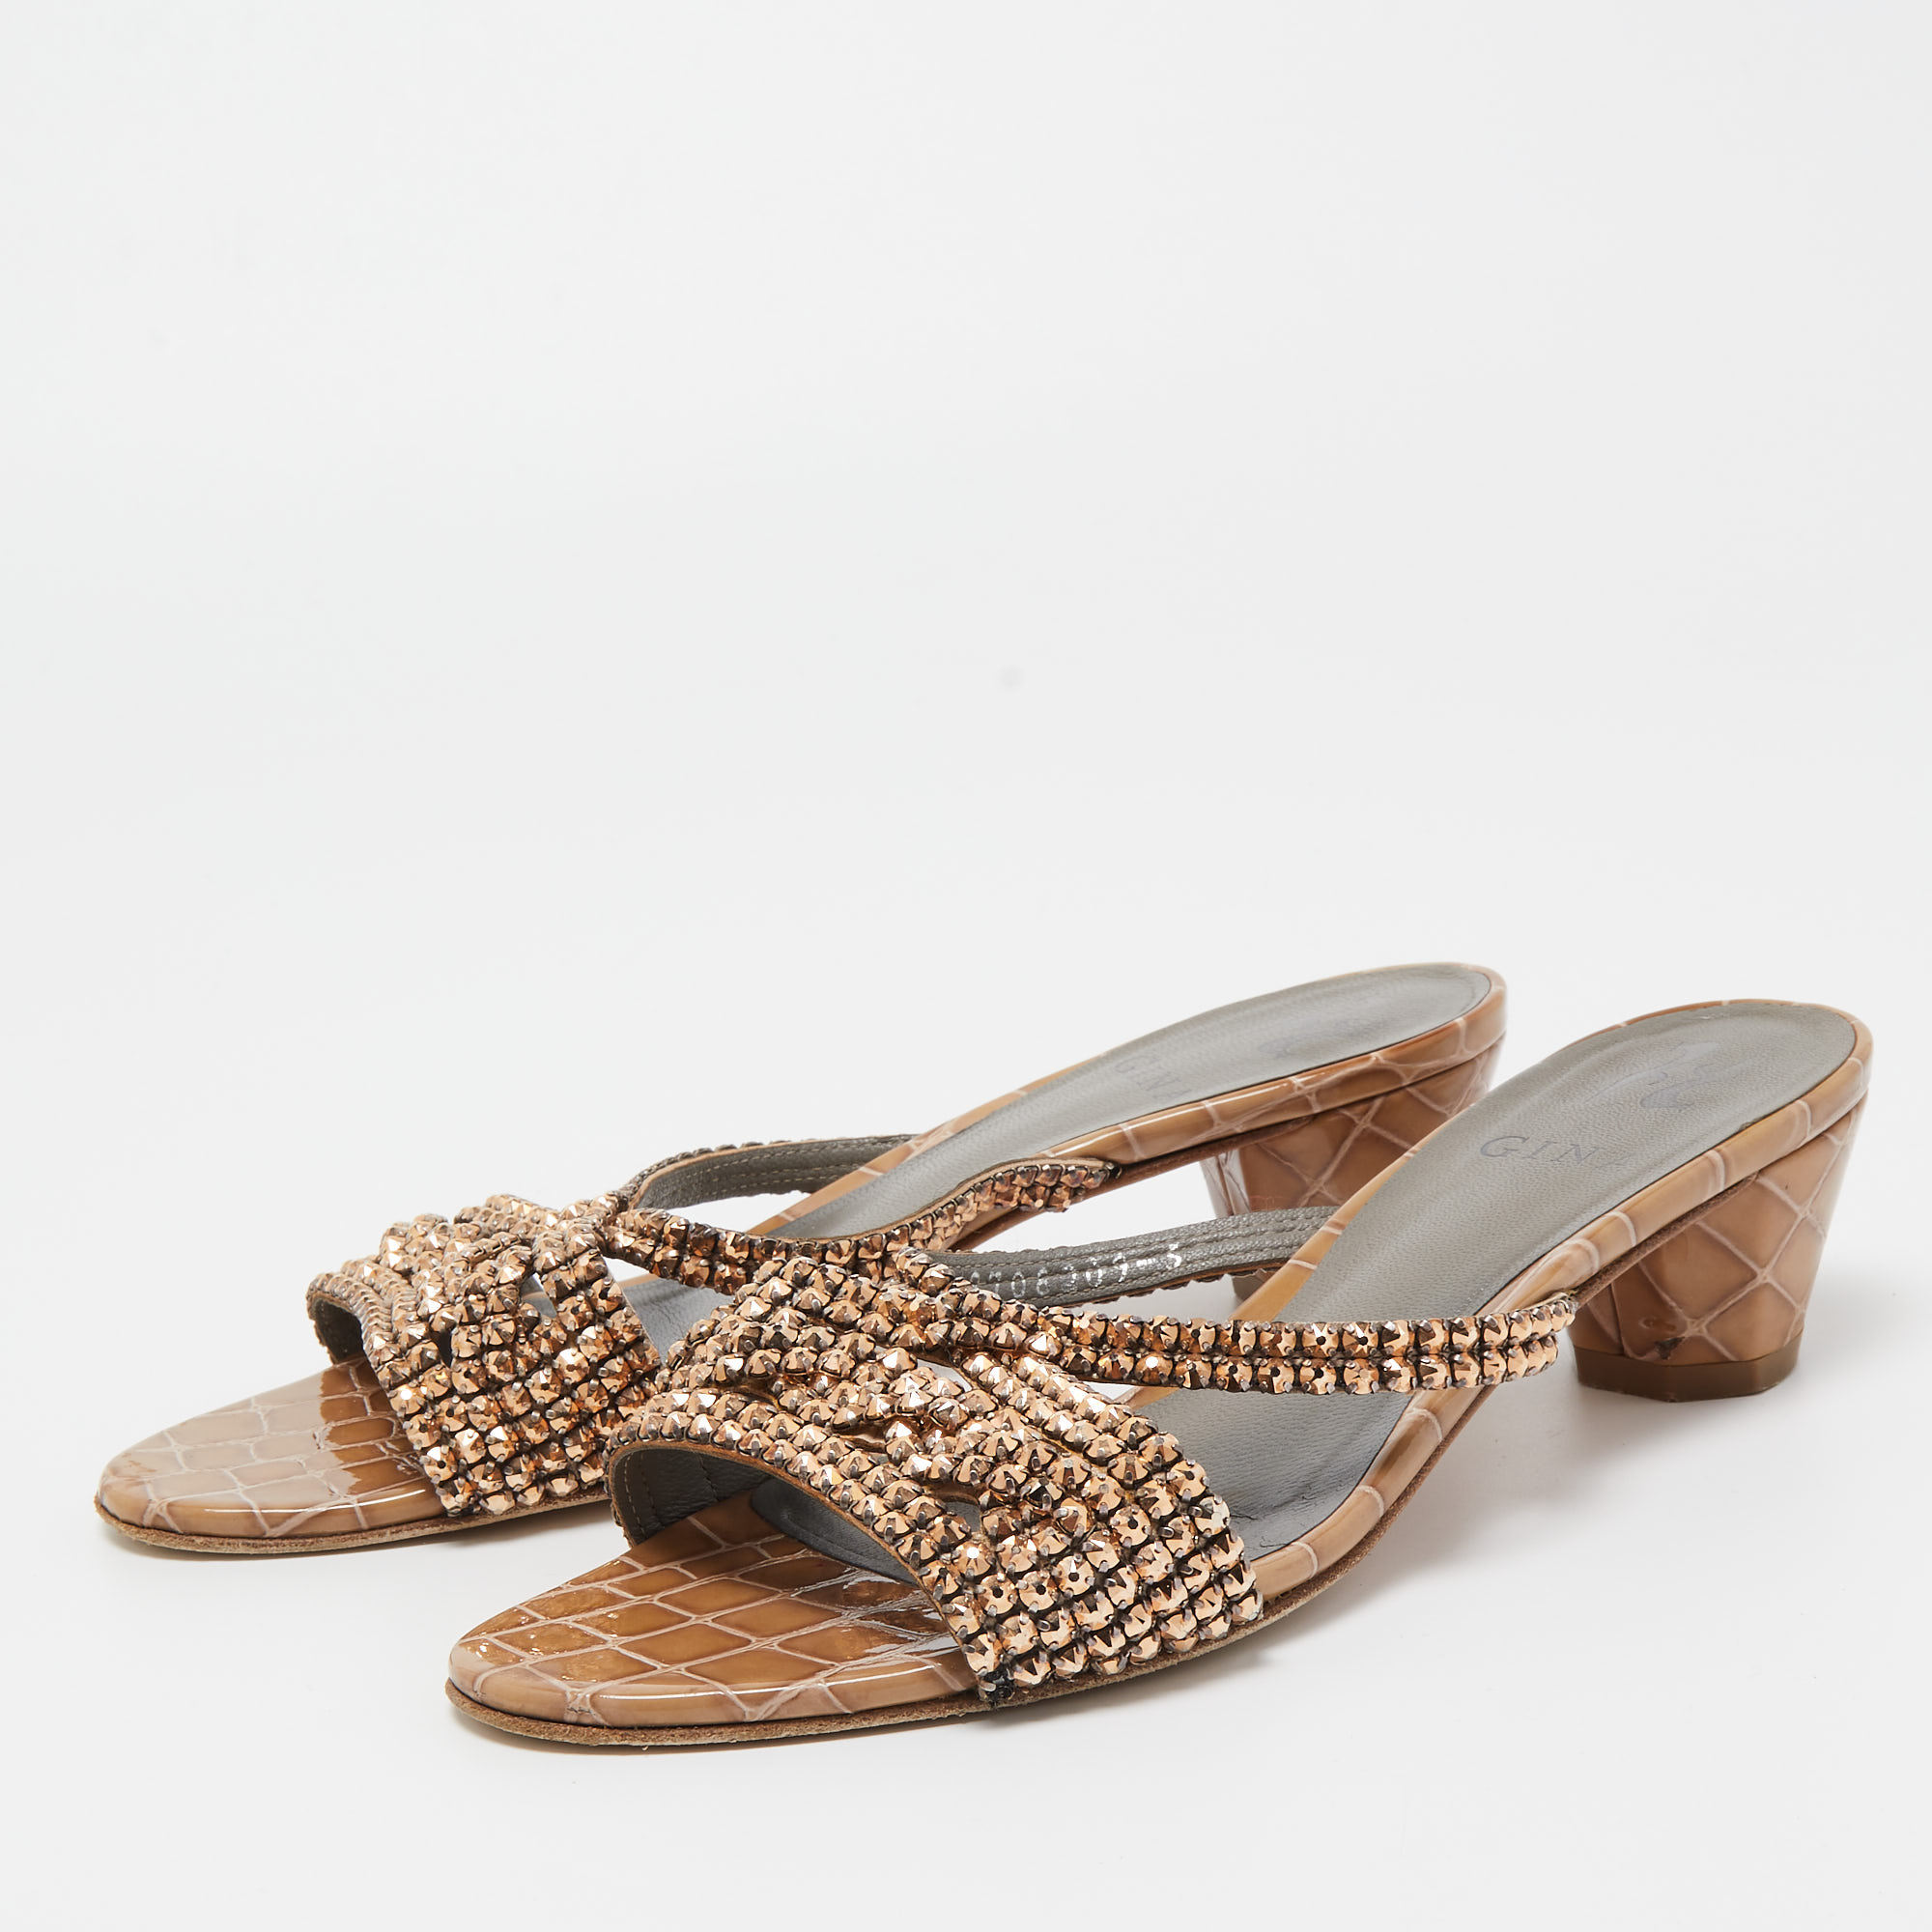 

Gina Brown Croc Embossed Patent Leather Crystal Embellished Slides Sandals Size